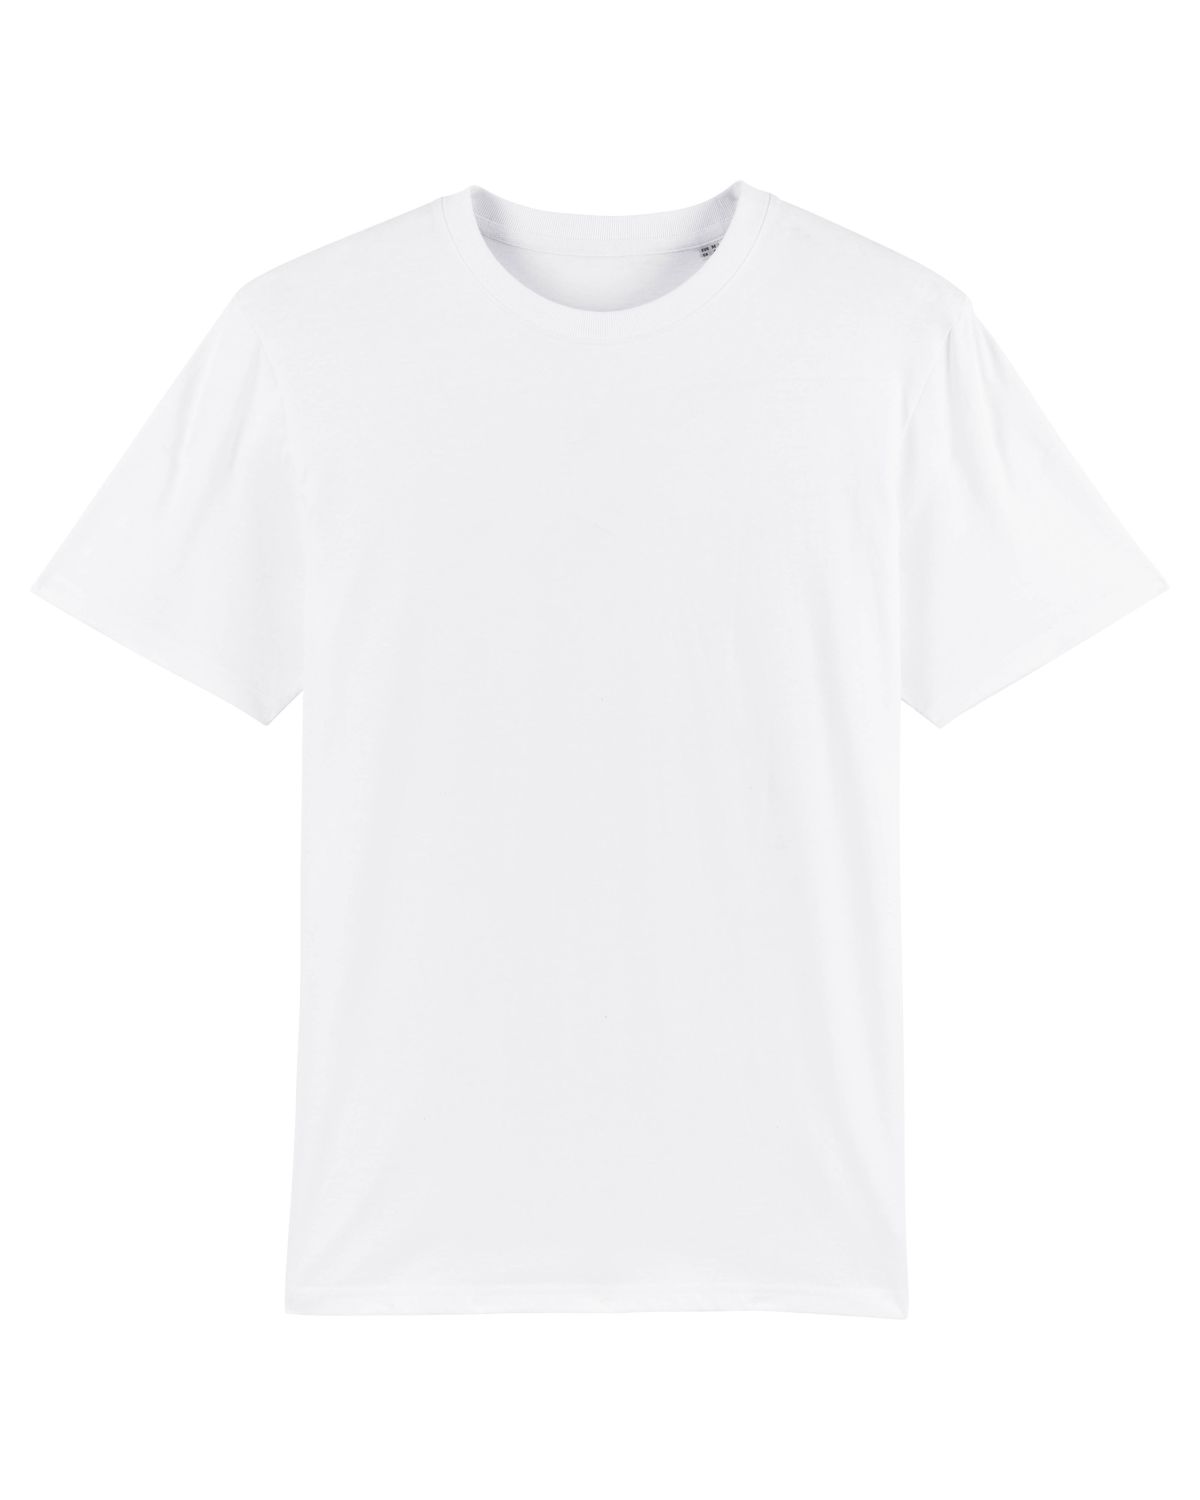 Stanley/Stella's - Sparker T-shirt - White